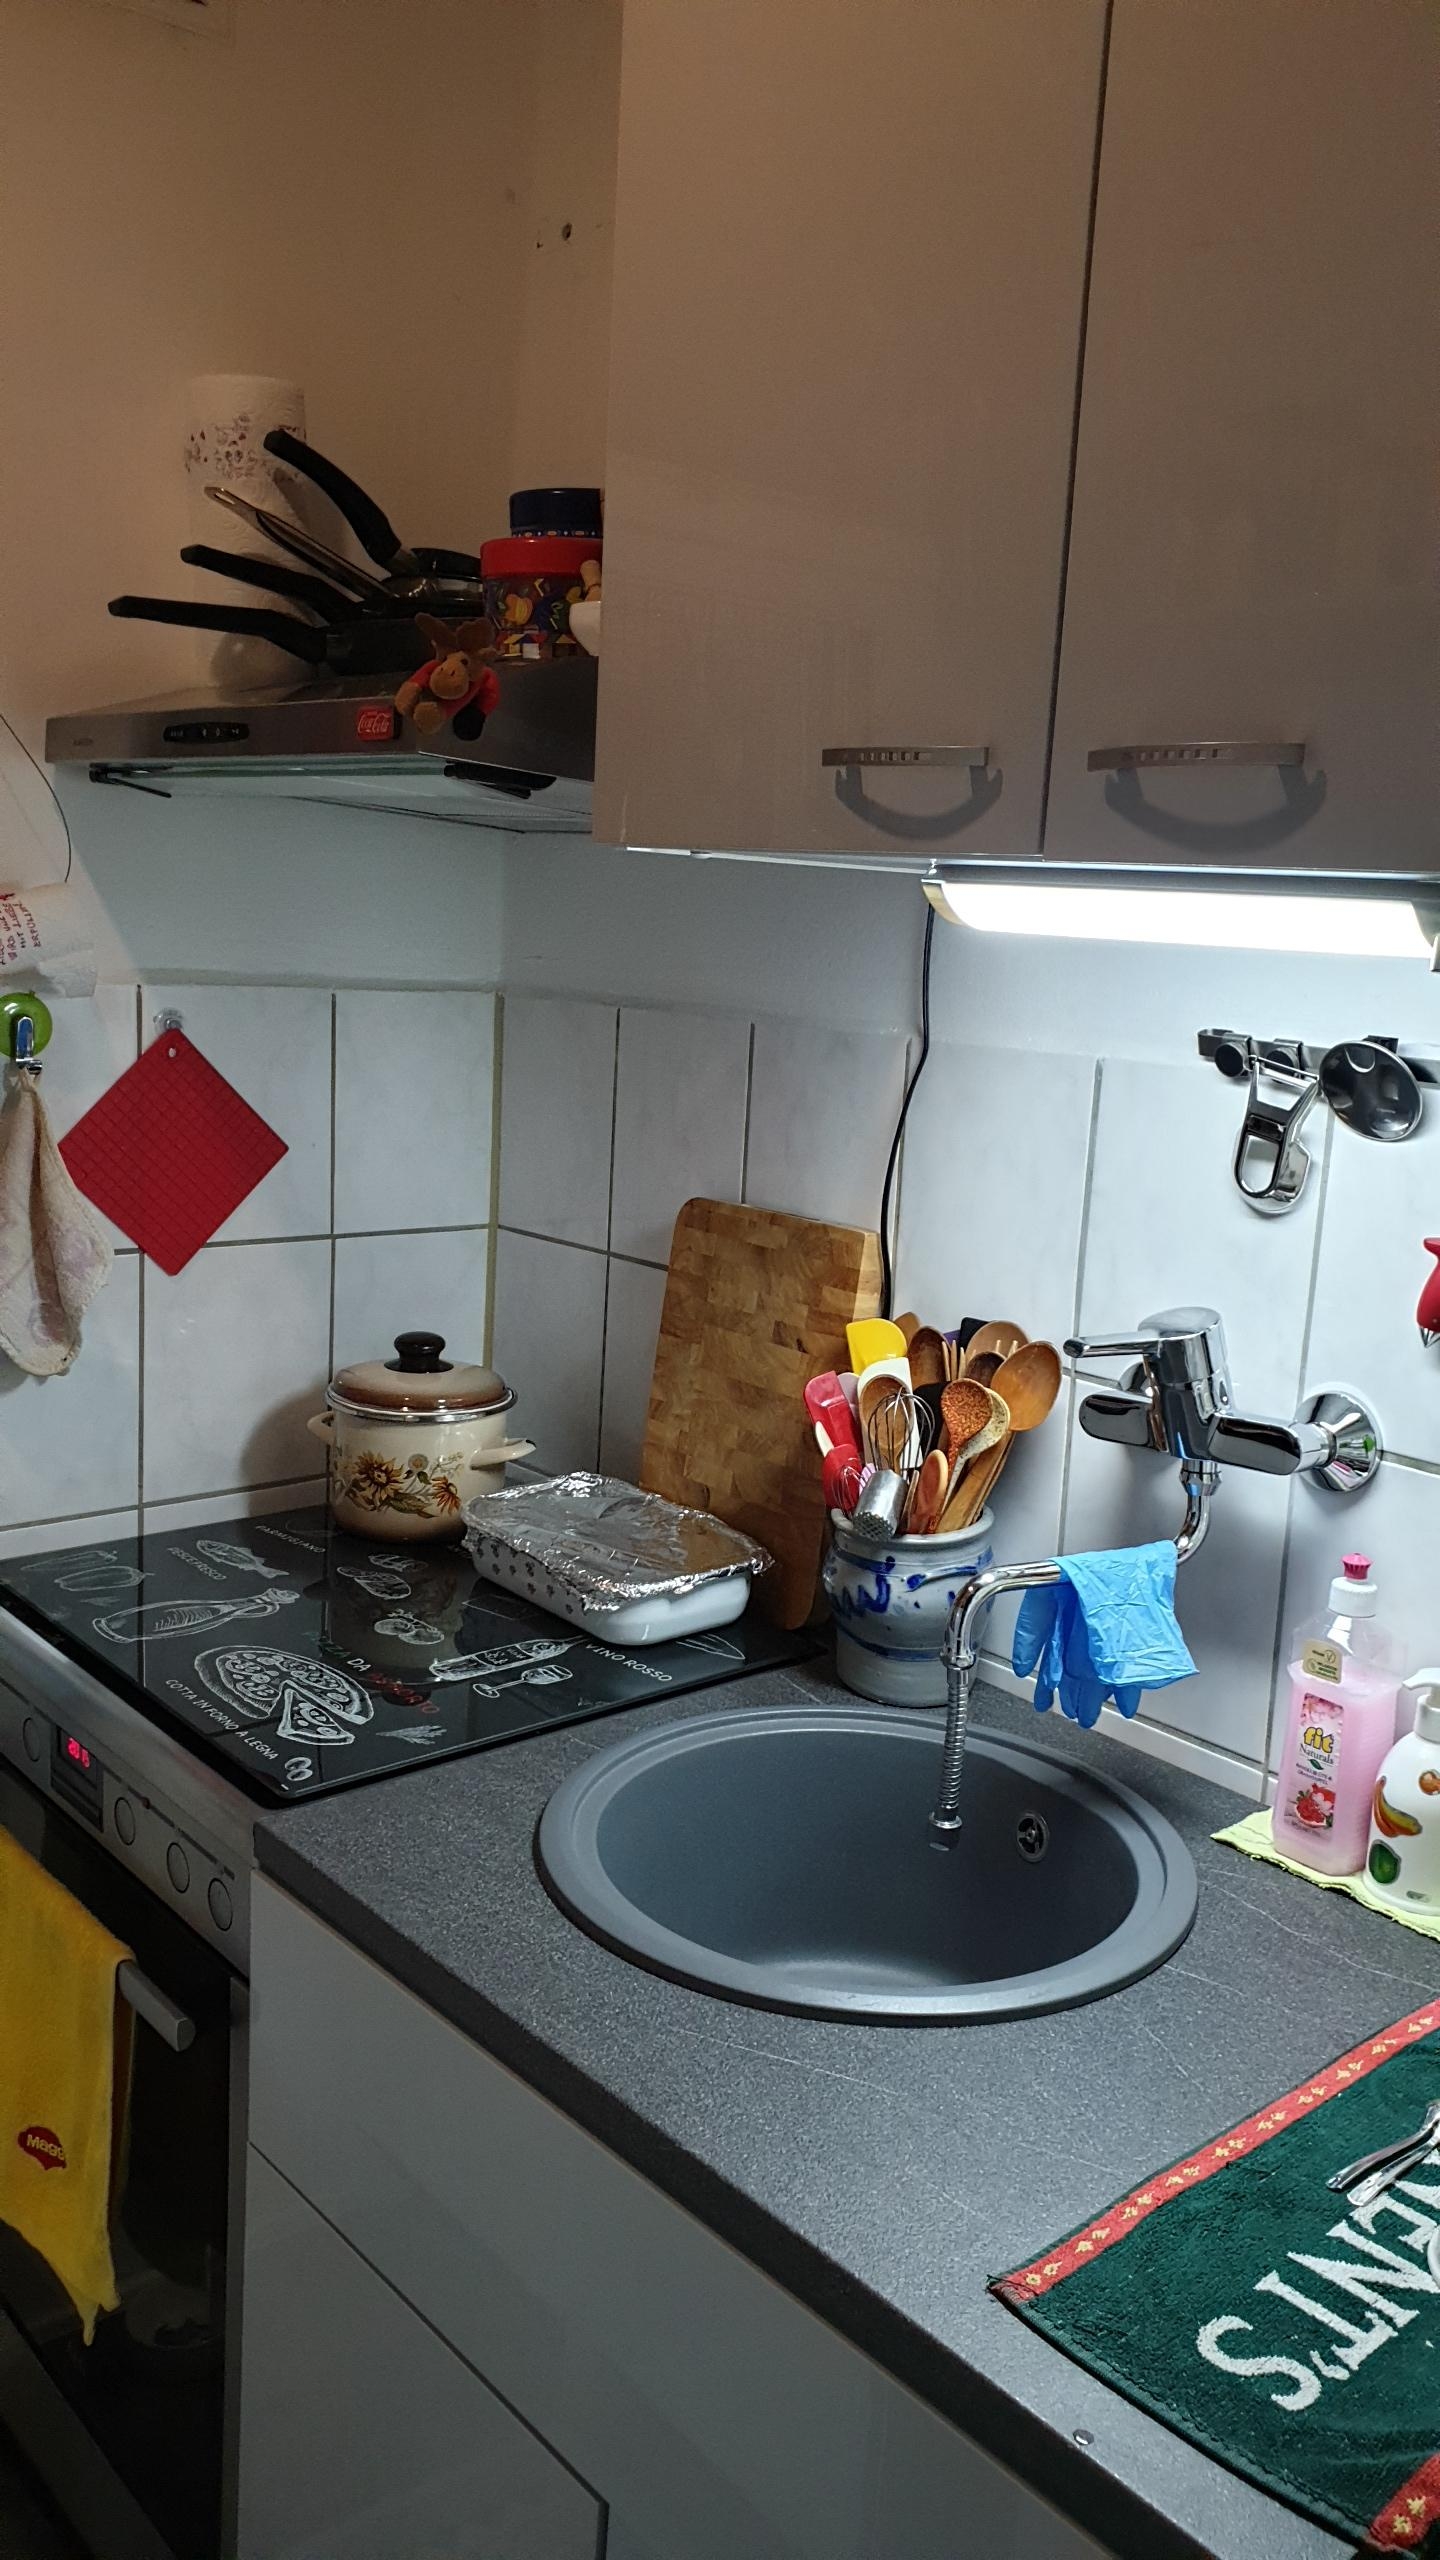 My tiny kitchen
#granitspüleplatos #klarstein #aeg #ikea